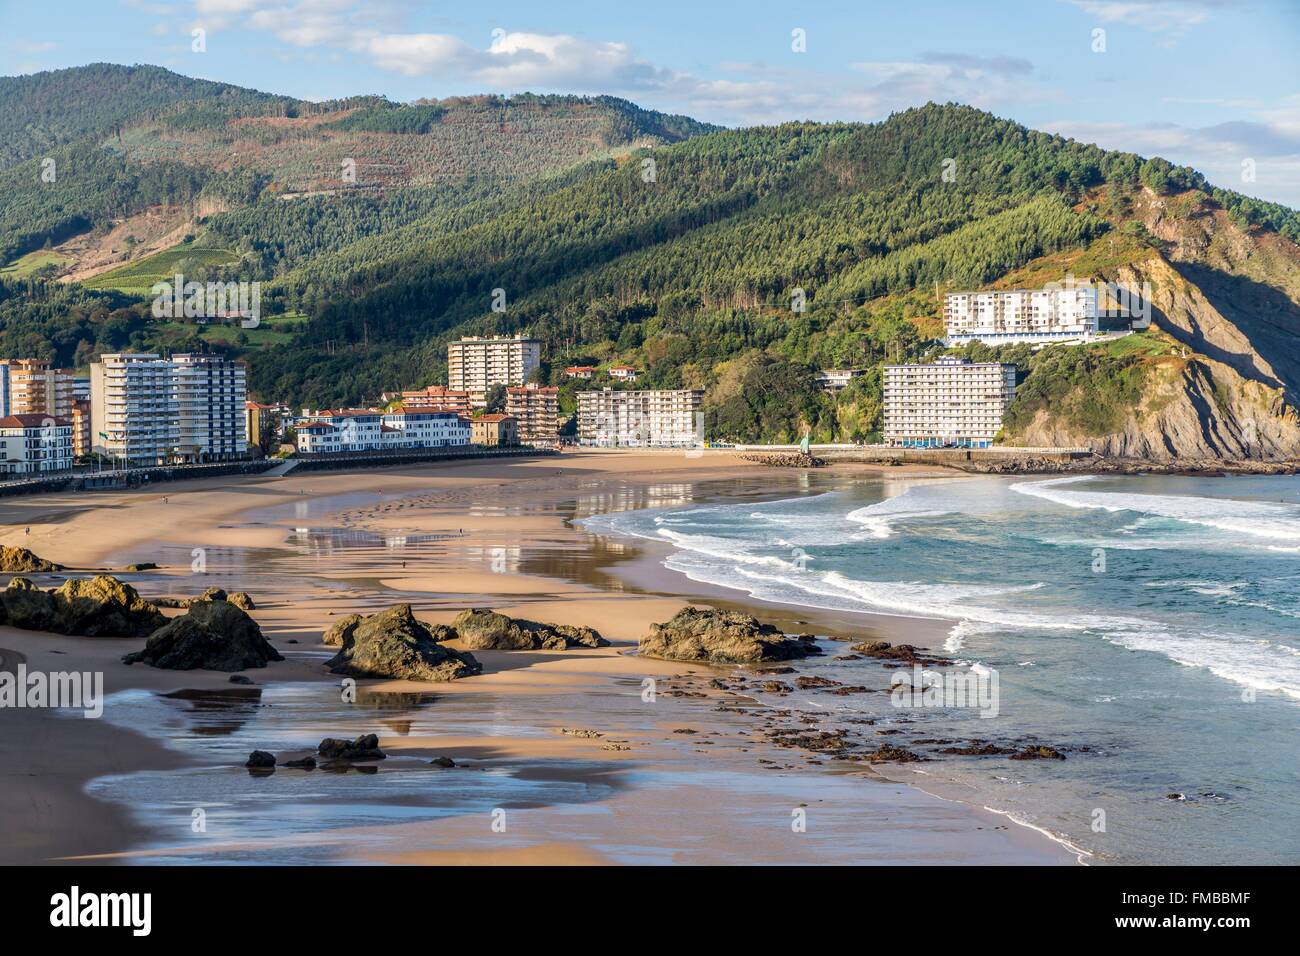 Spain, Basque Country, Bizkaia, Bakio, beach Stock Photo